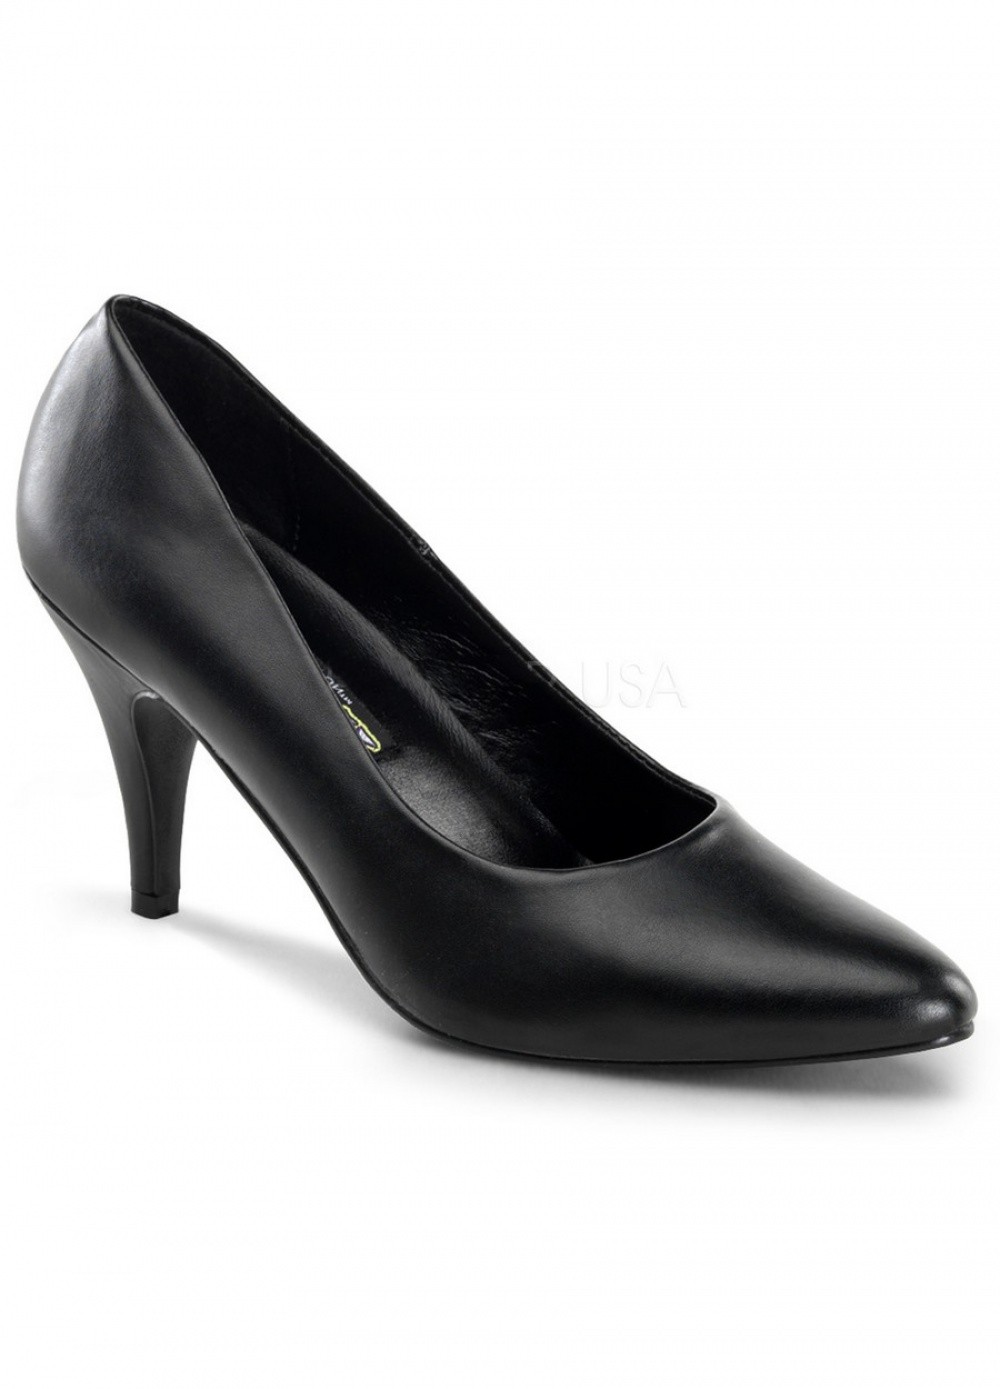 Pleaser Chaussures Escarpins noir grande Taille 41 au 44 - Talon 7 cm